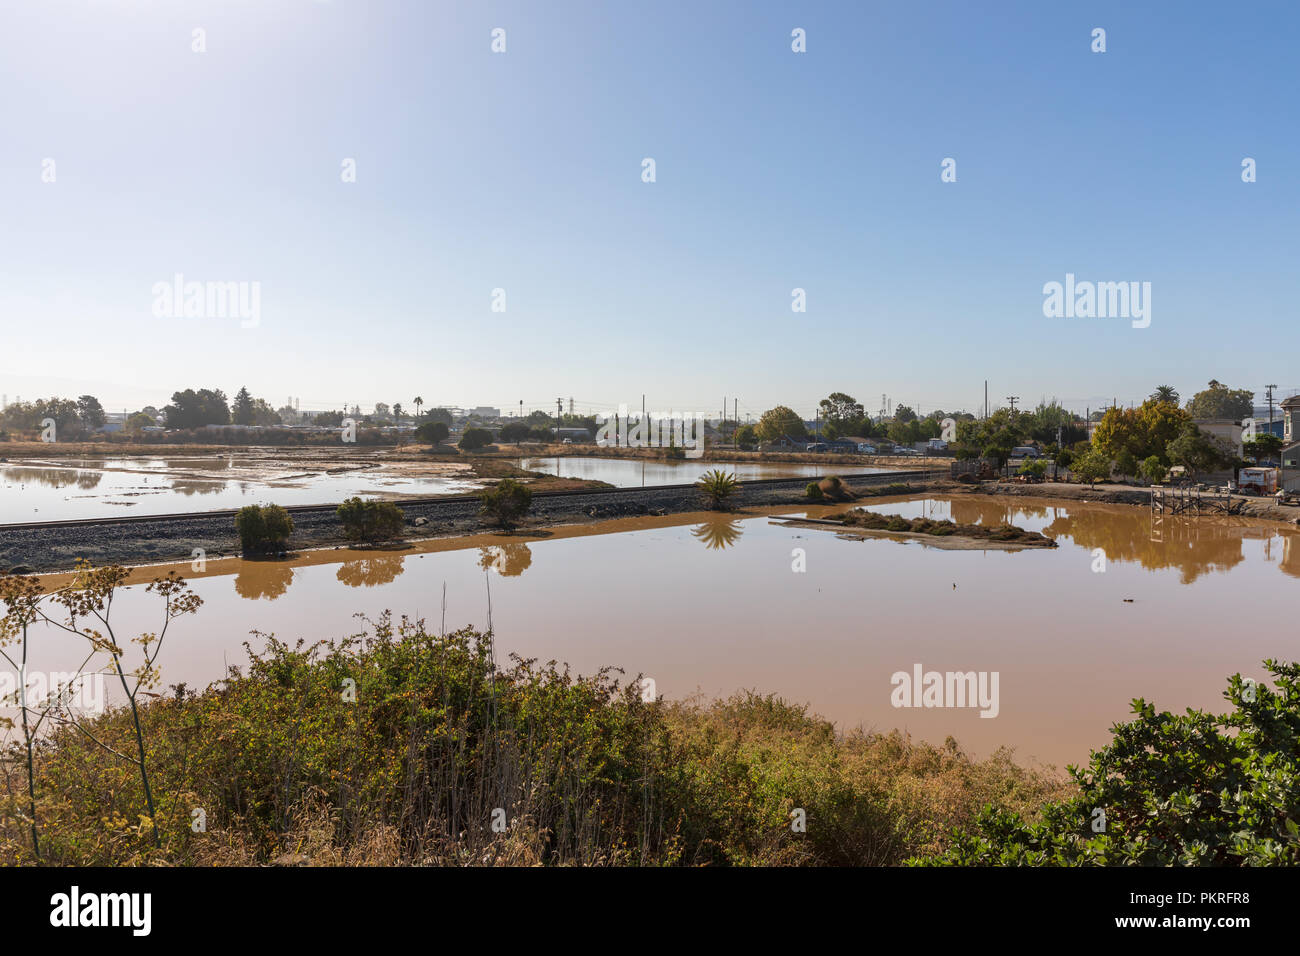 Alviso; view from Hope Street, by Alviso Marina County Park entrance; California, USA Stock Photo